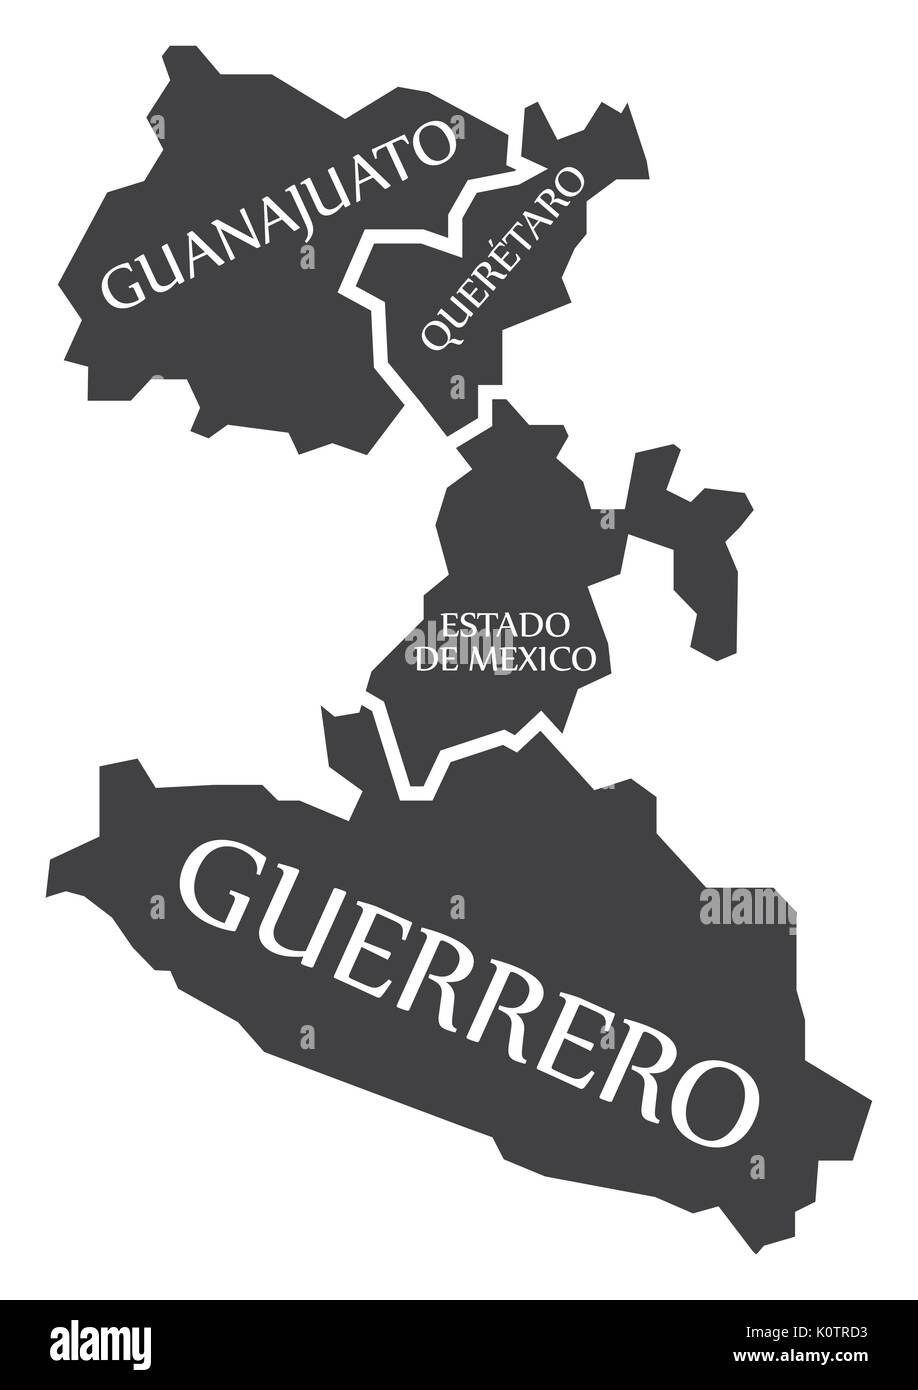 Guanajuato - Querétaro - Estado de Mexico - Mexique Guerrero Site illustration Illustration de Vecteur